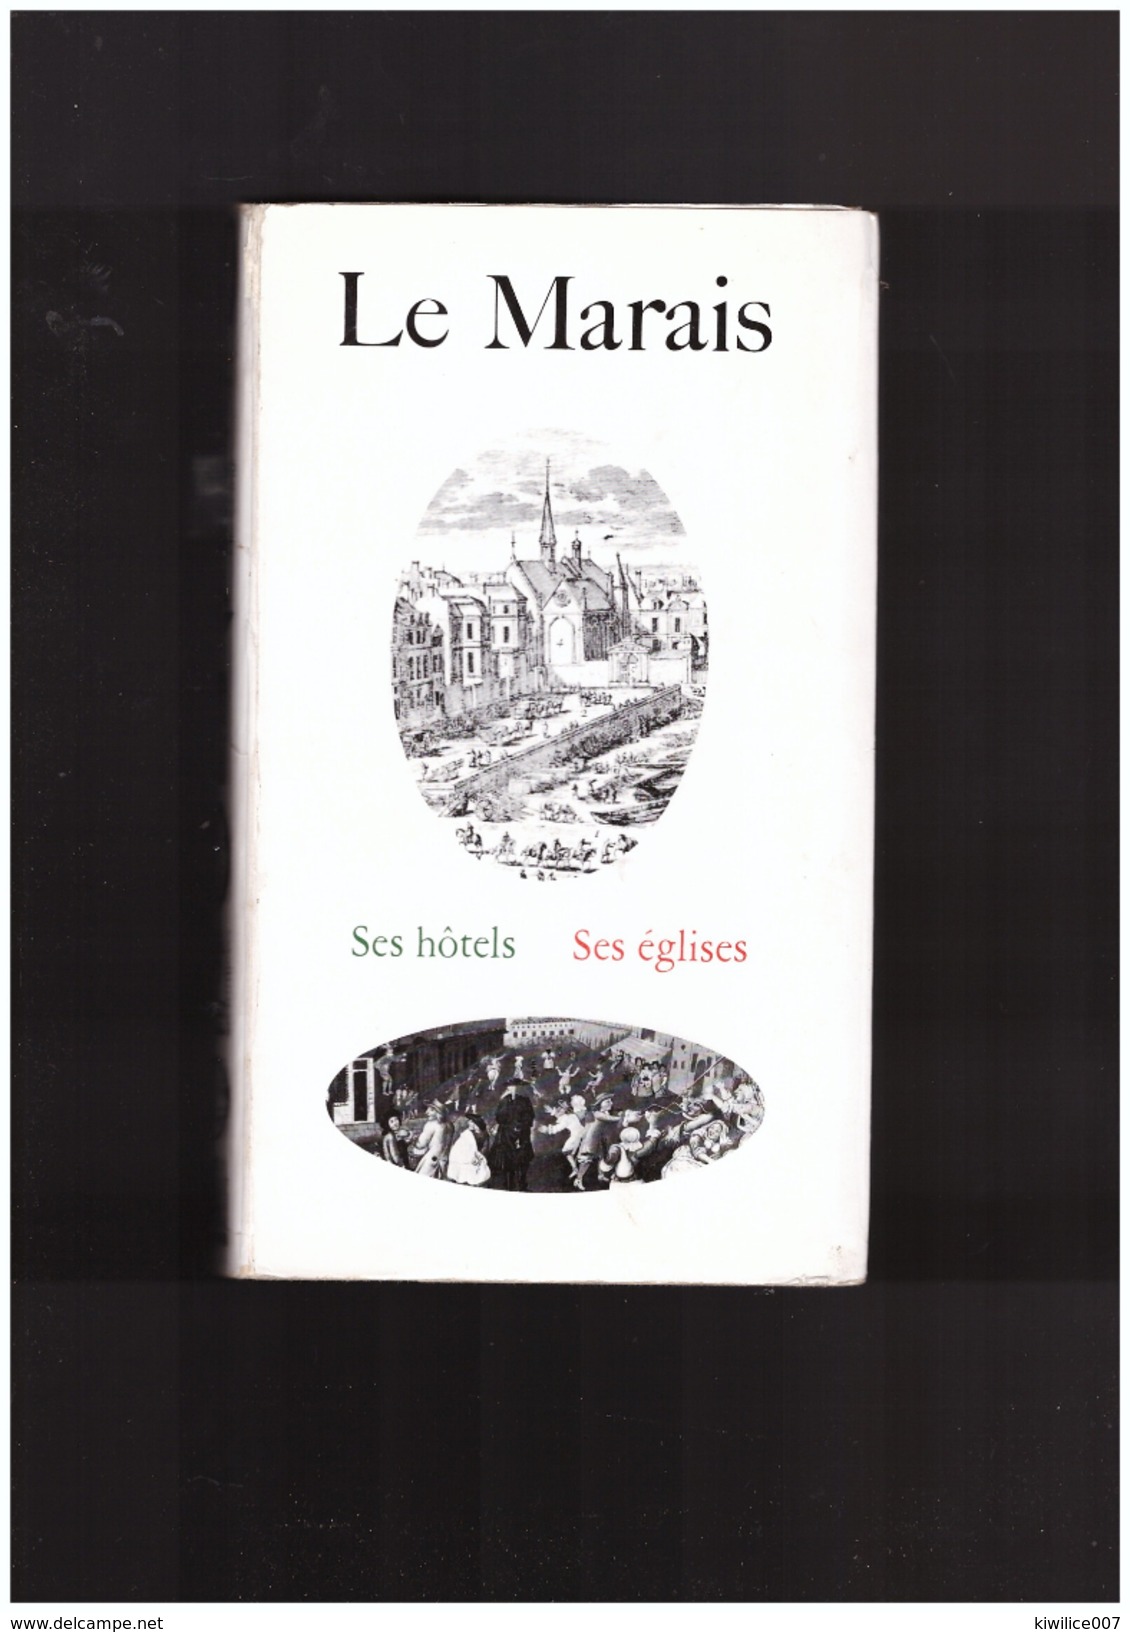 Le Marais   Ses Hotels   Ses églises - Parijs